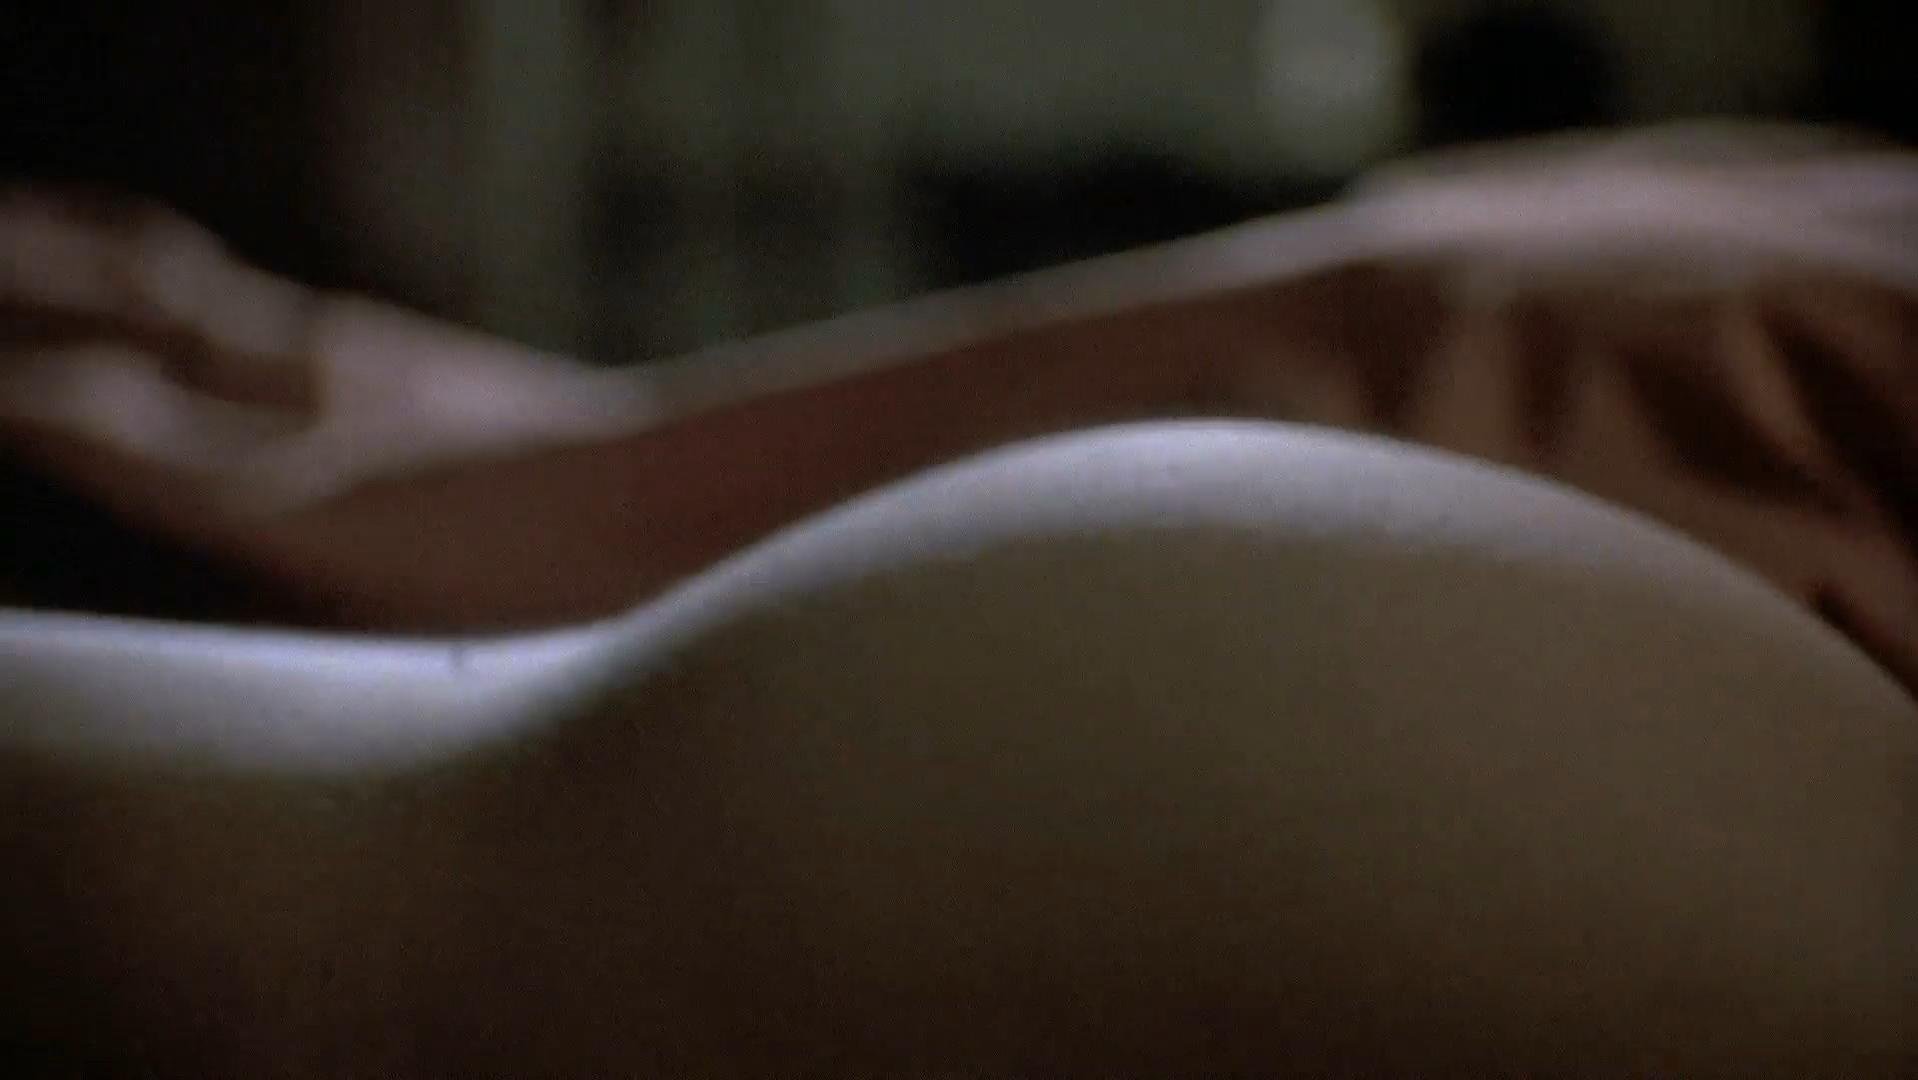 Linda fiorentino last seduction sex scene